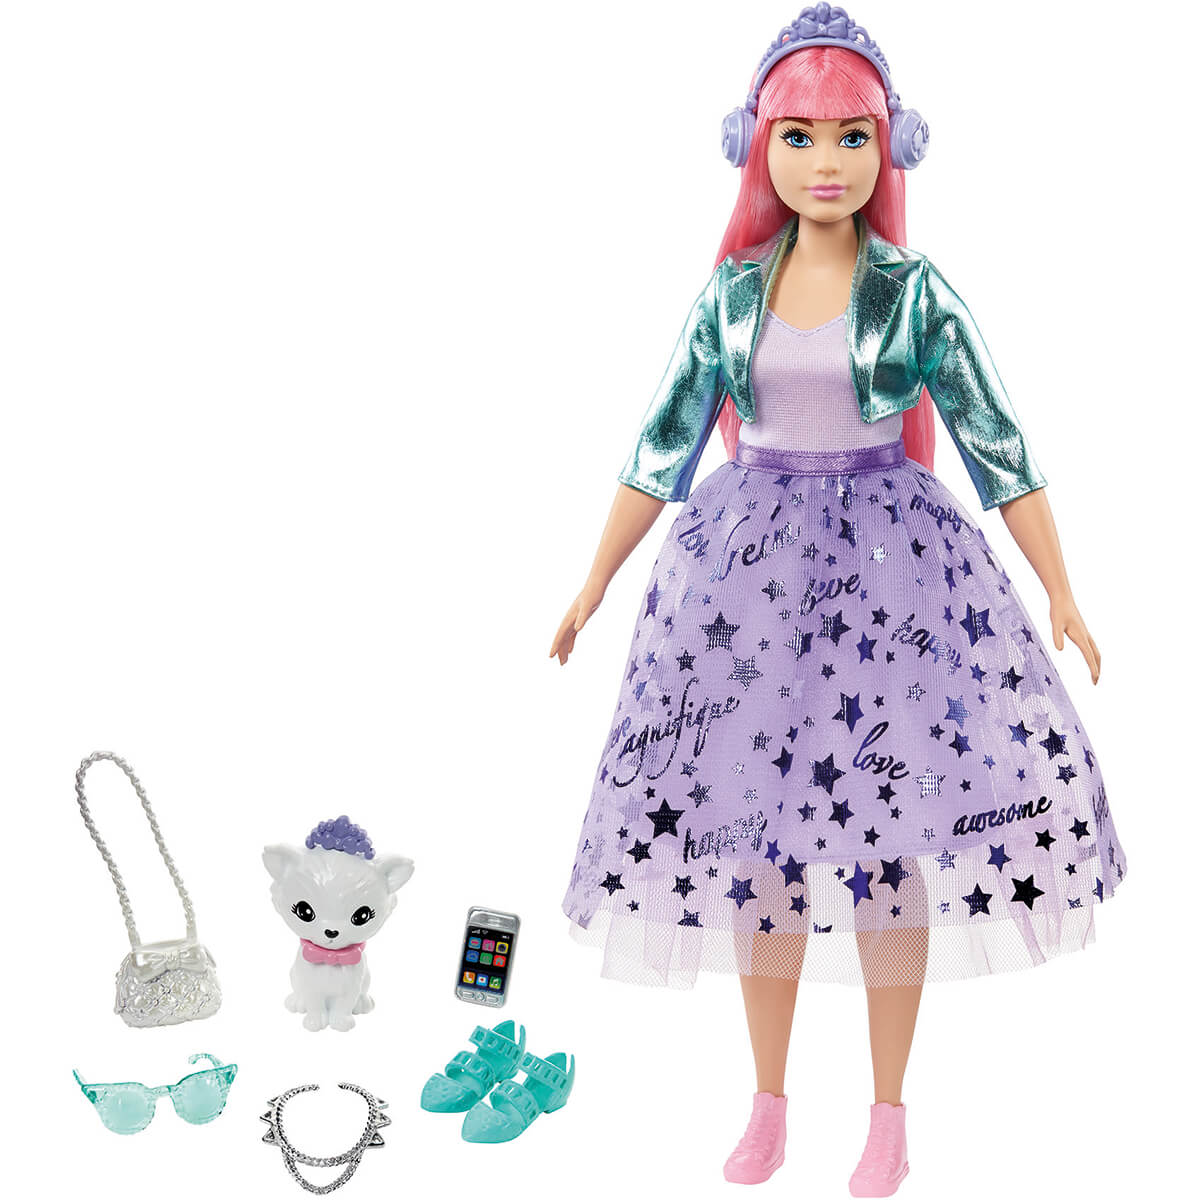 Y así S t sábado Barbie Princesa Adventure Deluxe